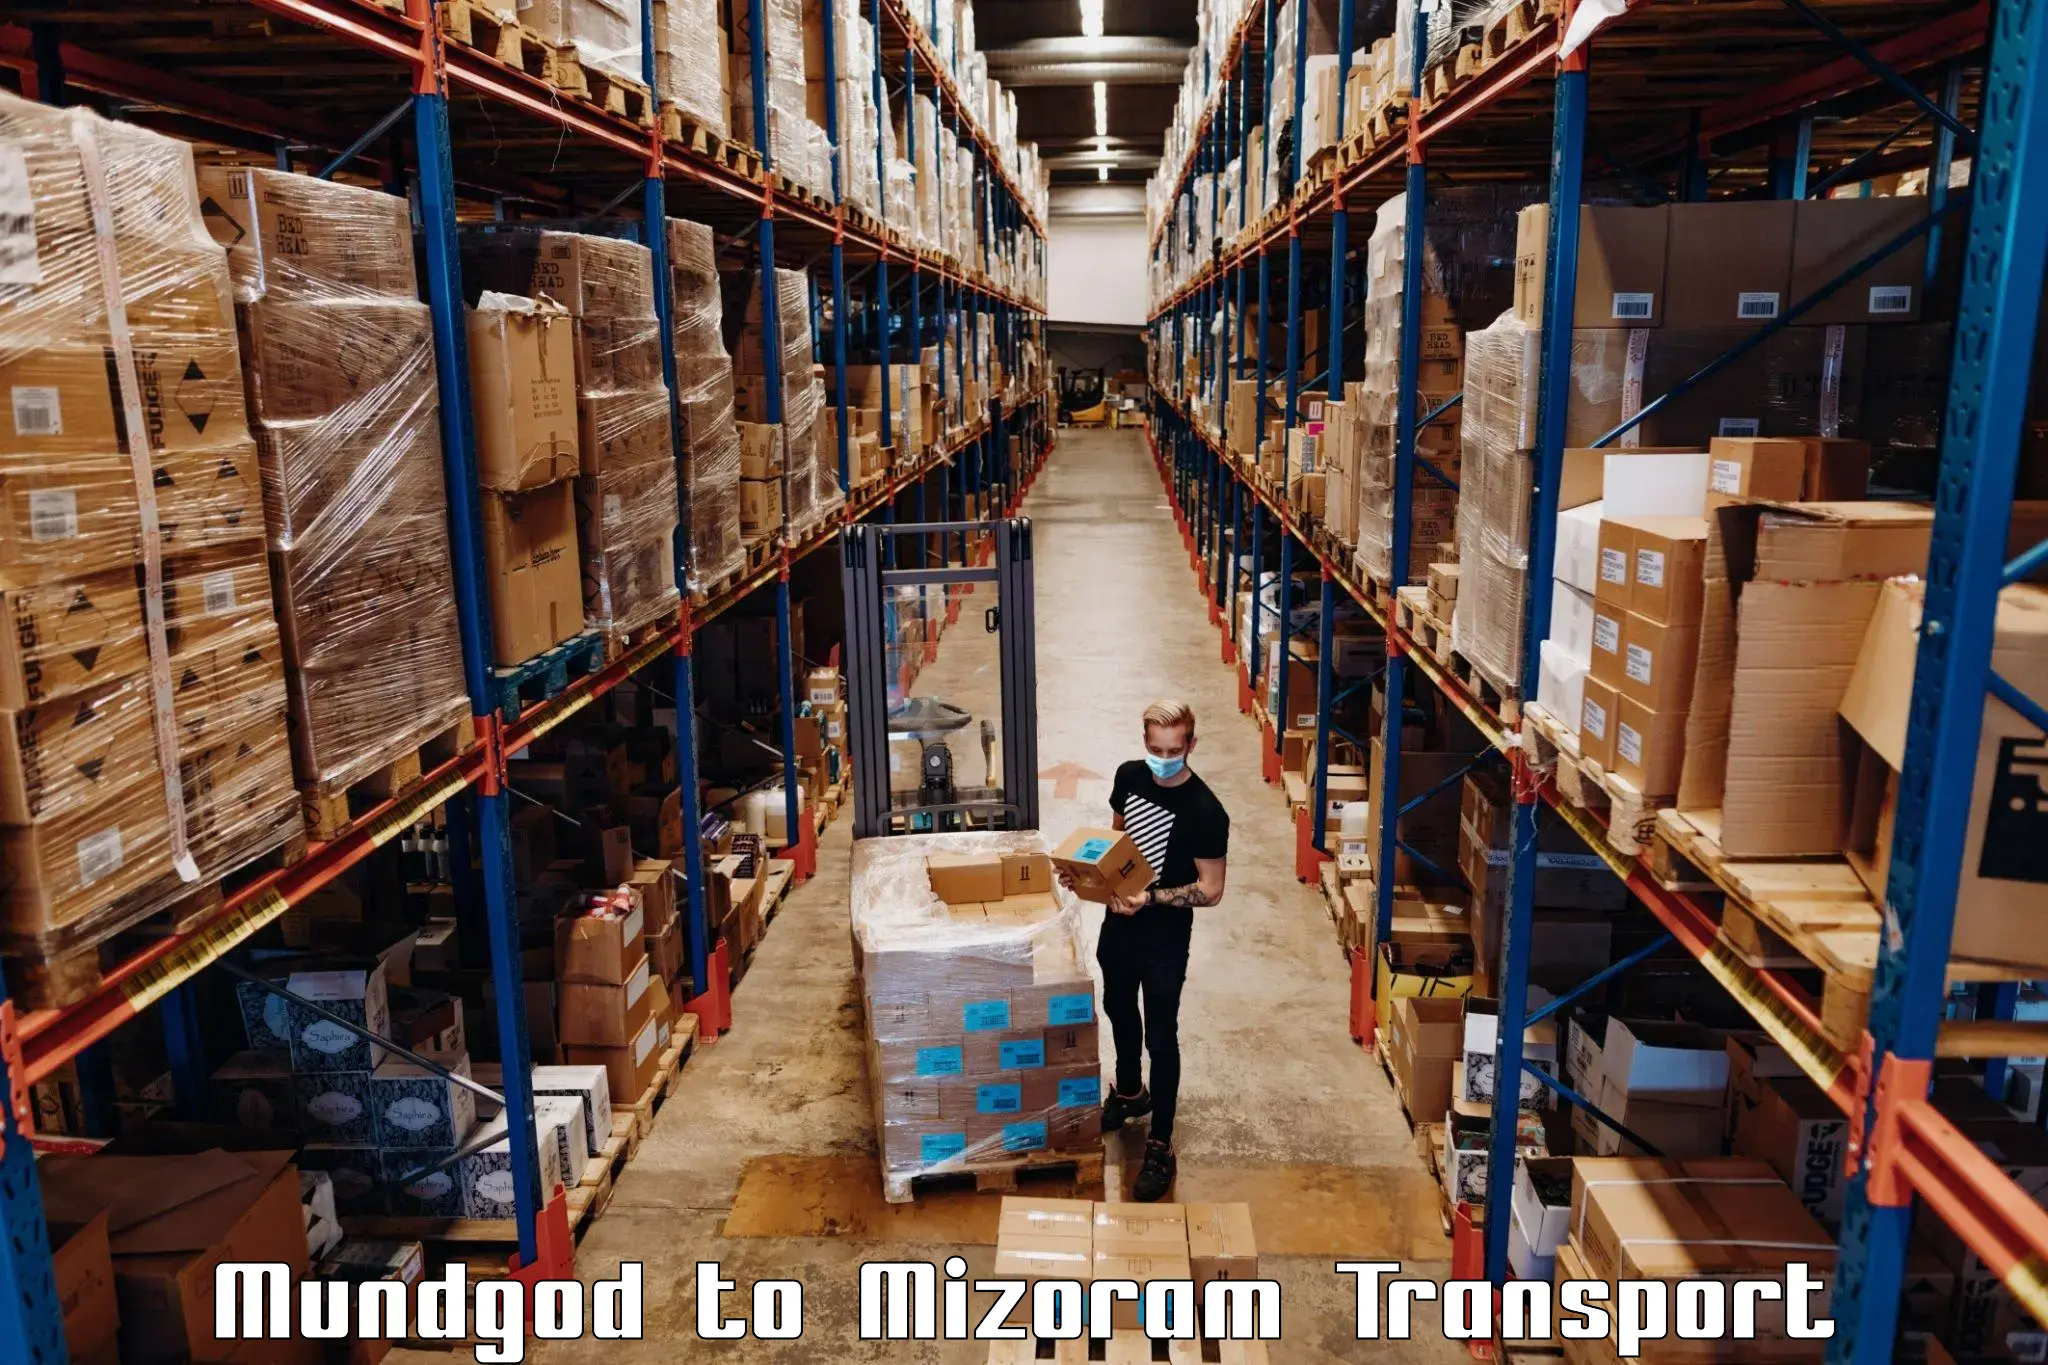 Container transport service Mundgod to Khawzawl